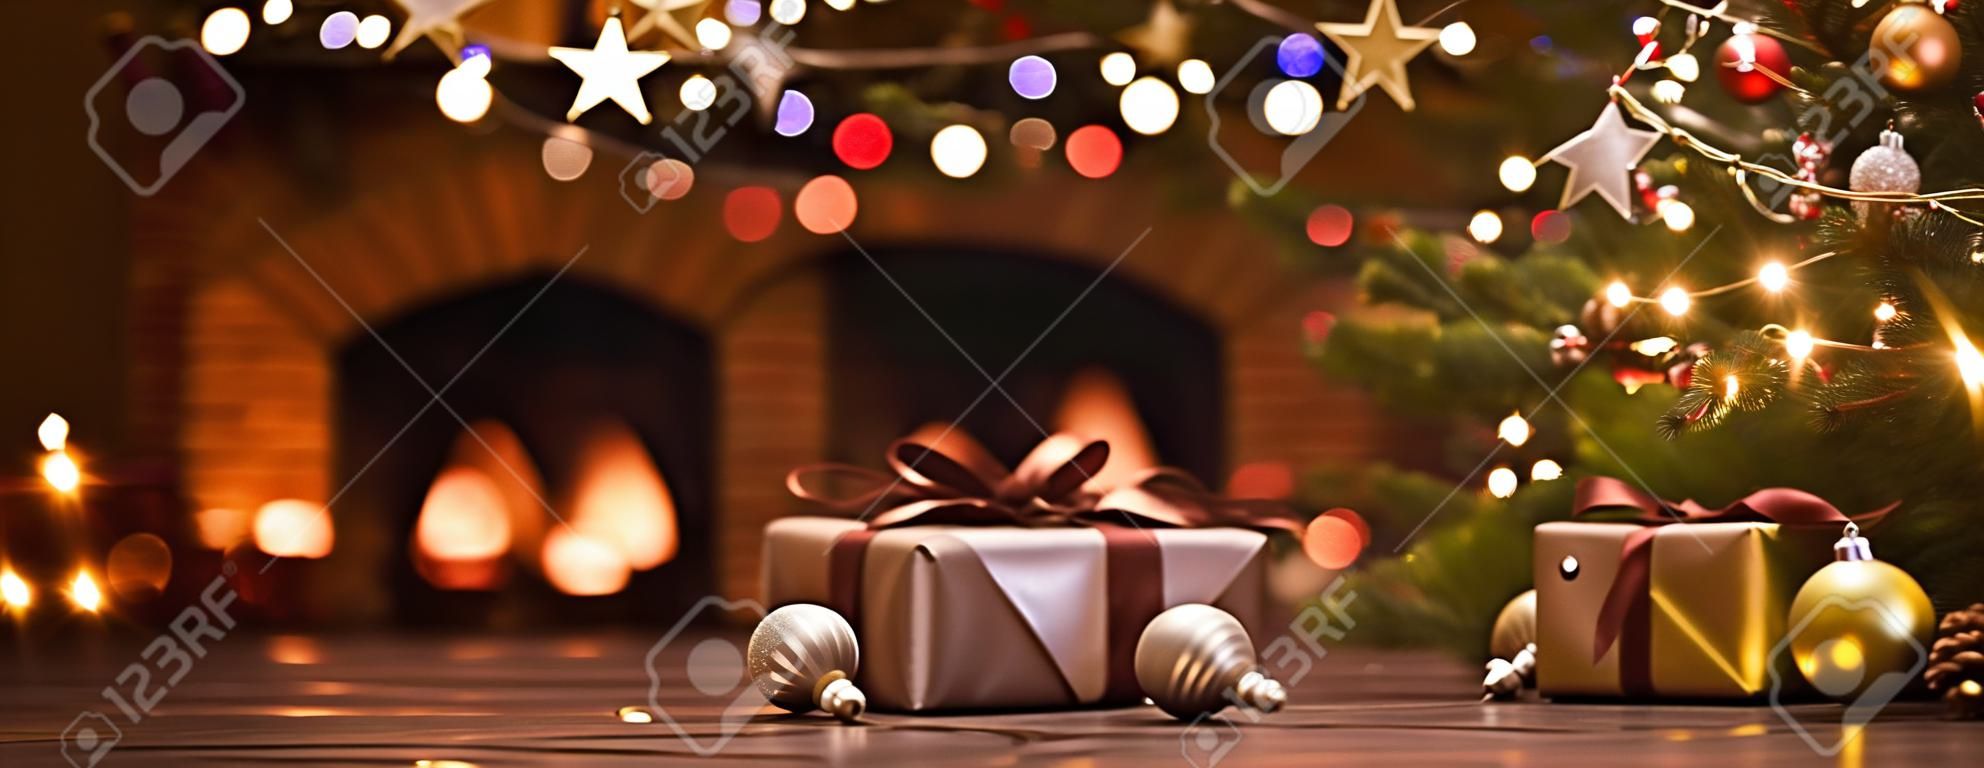 Arbre de Noël avec des décorations près d'une cheminée avec des lumières